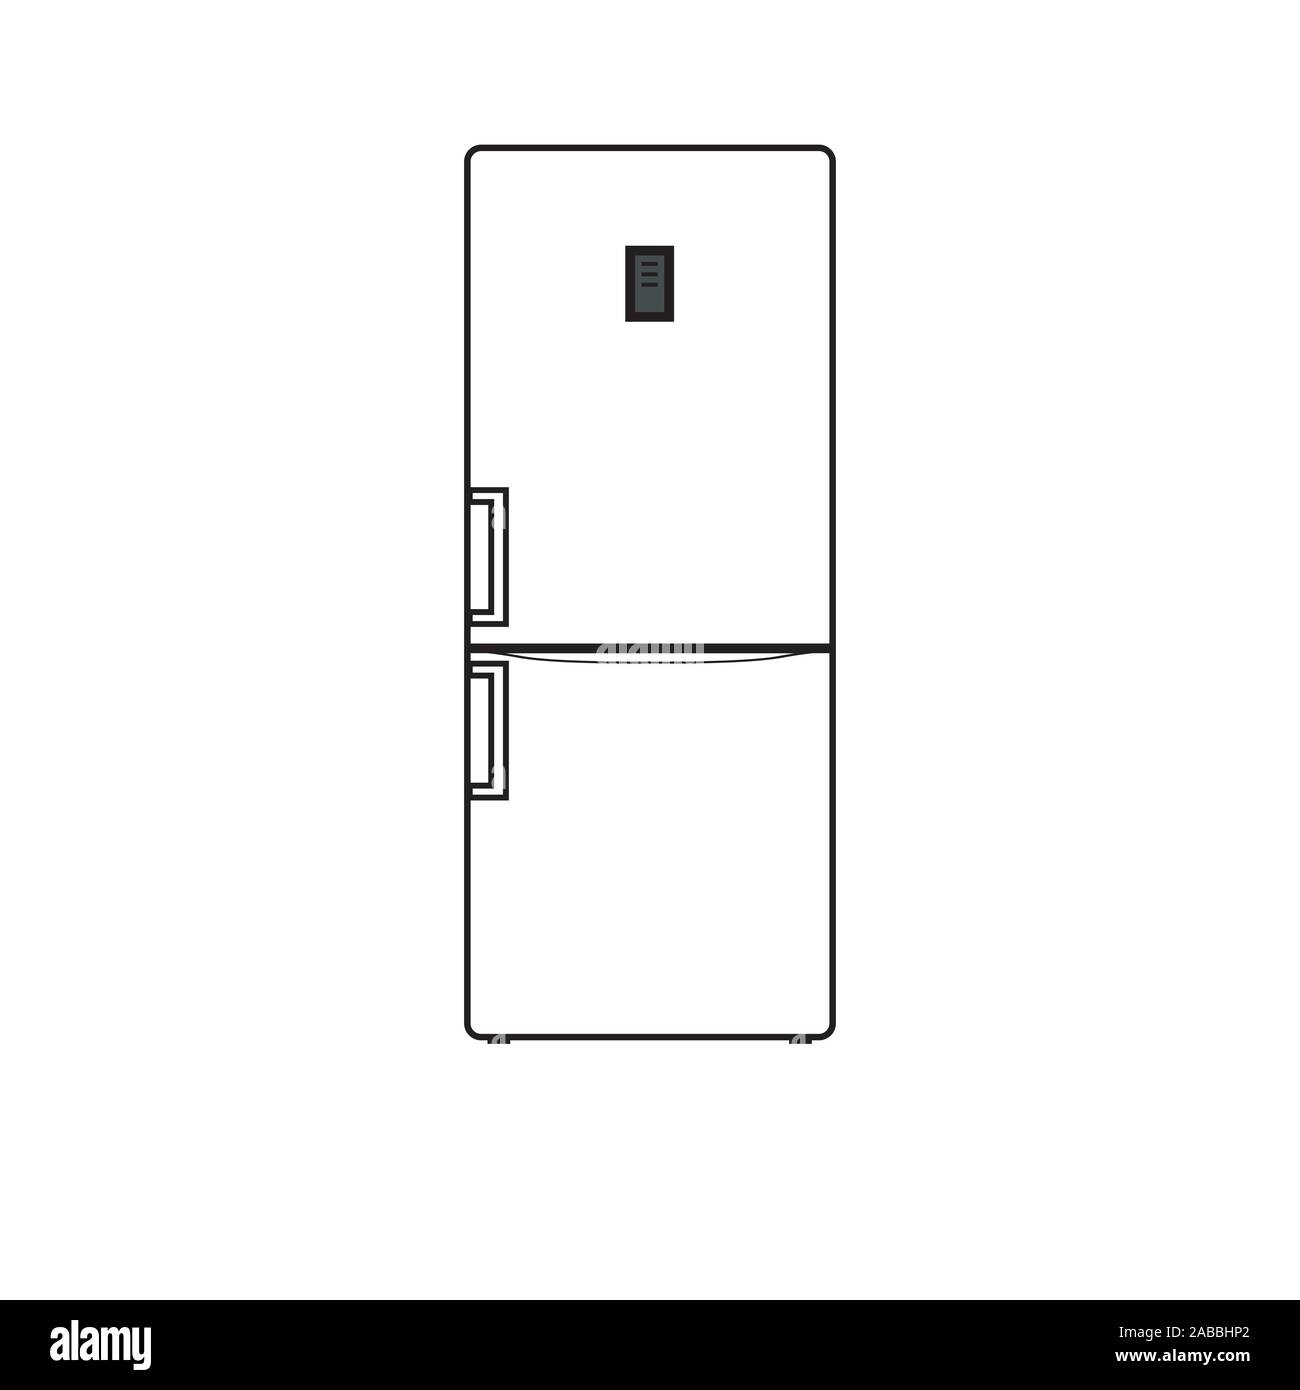 Vector illustration of a modern gray refrigerator. Stock Vector